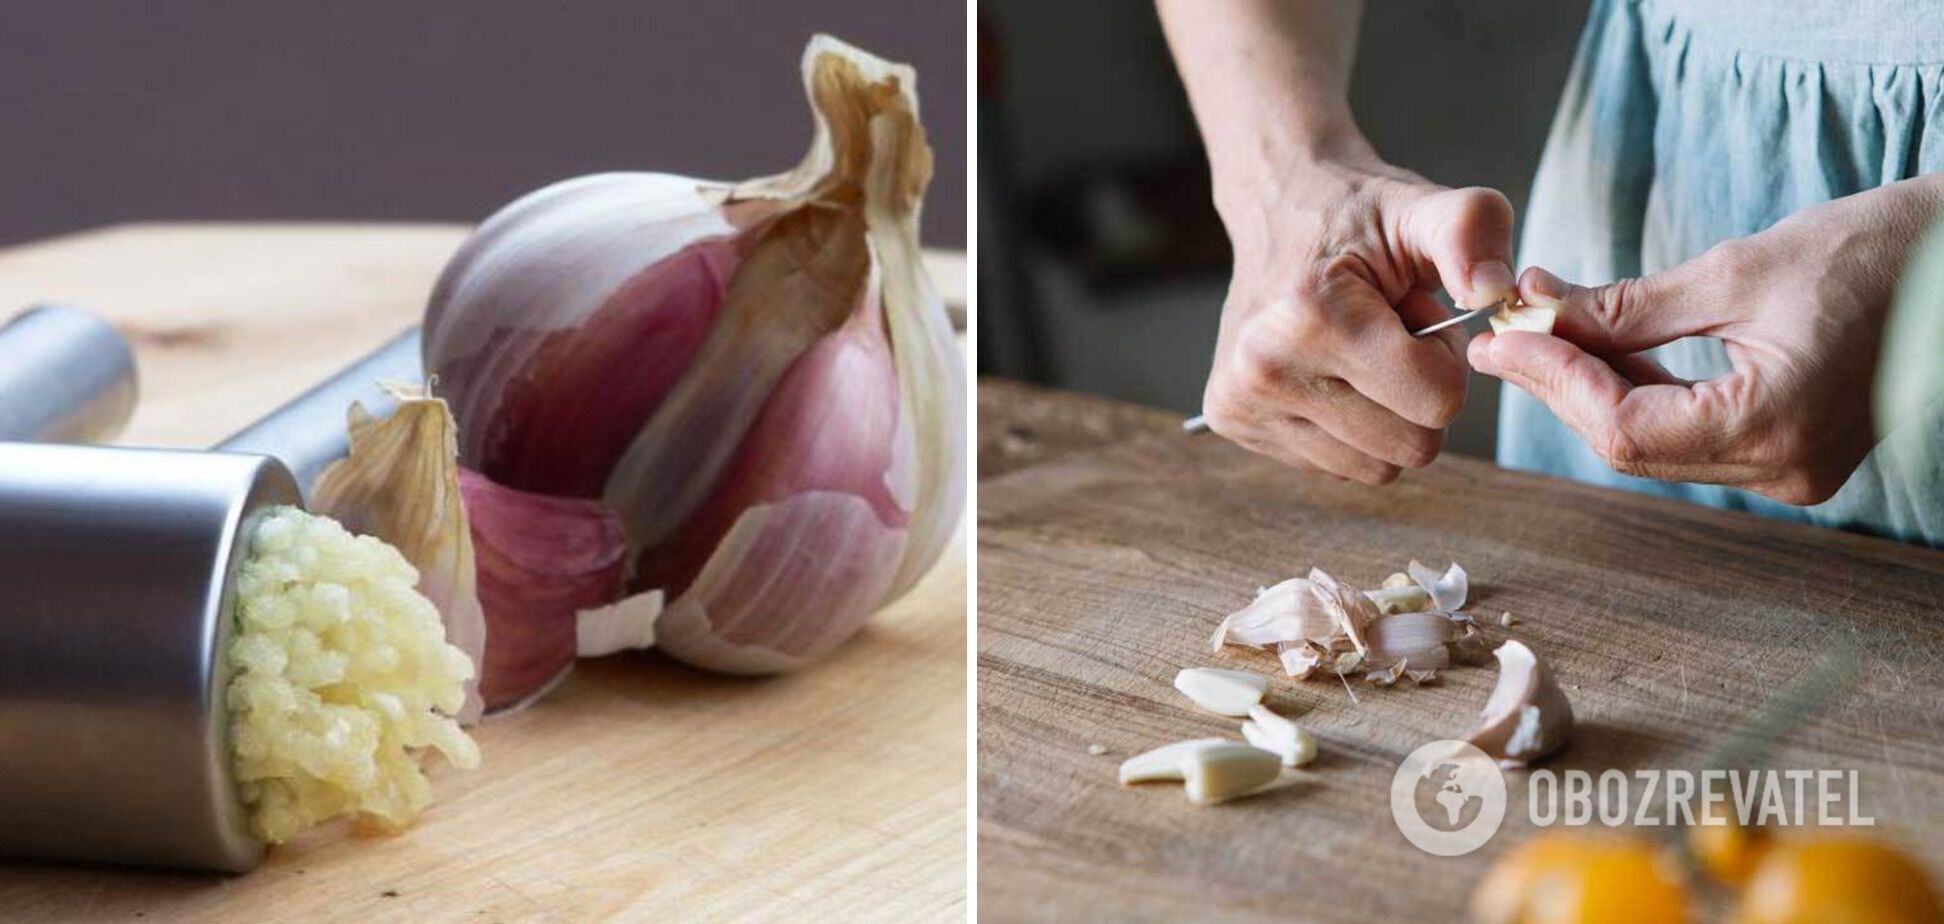 Garlic for a dish